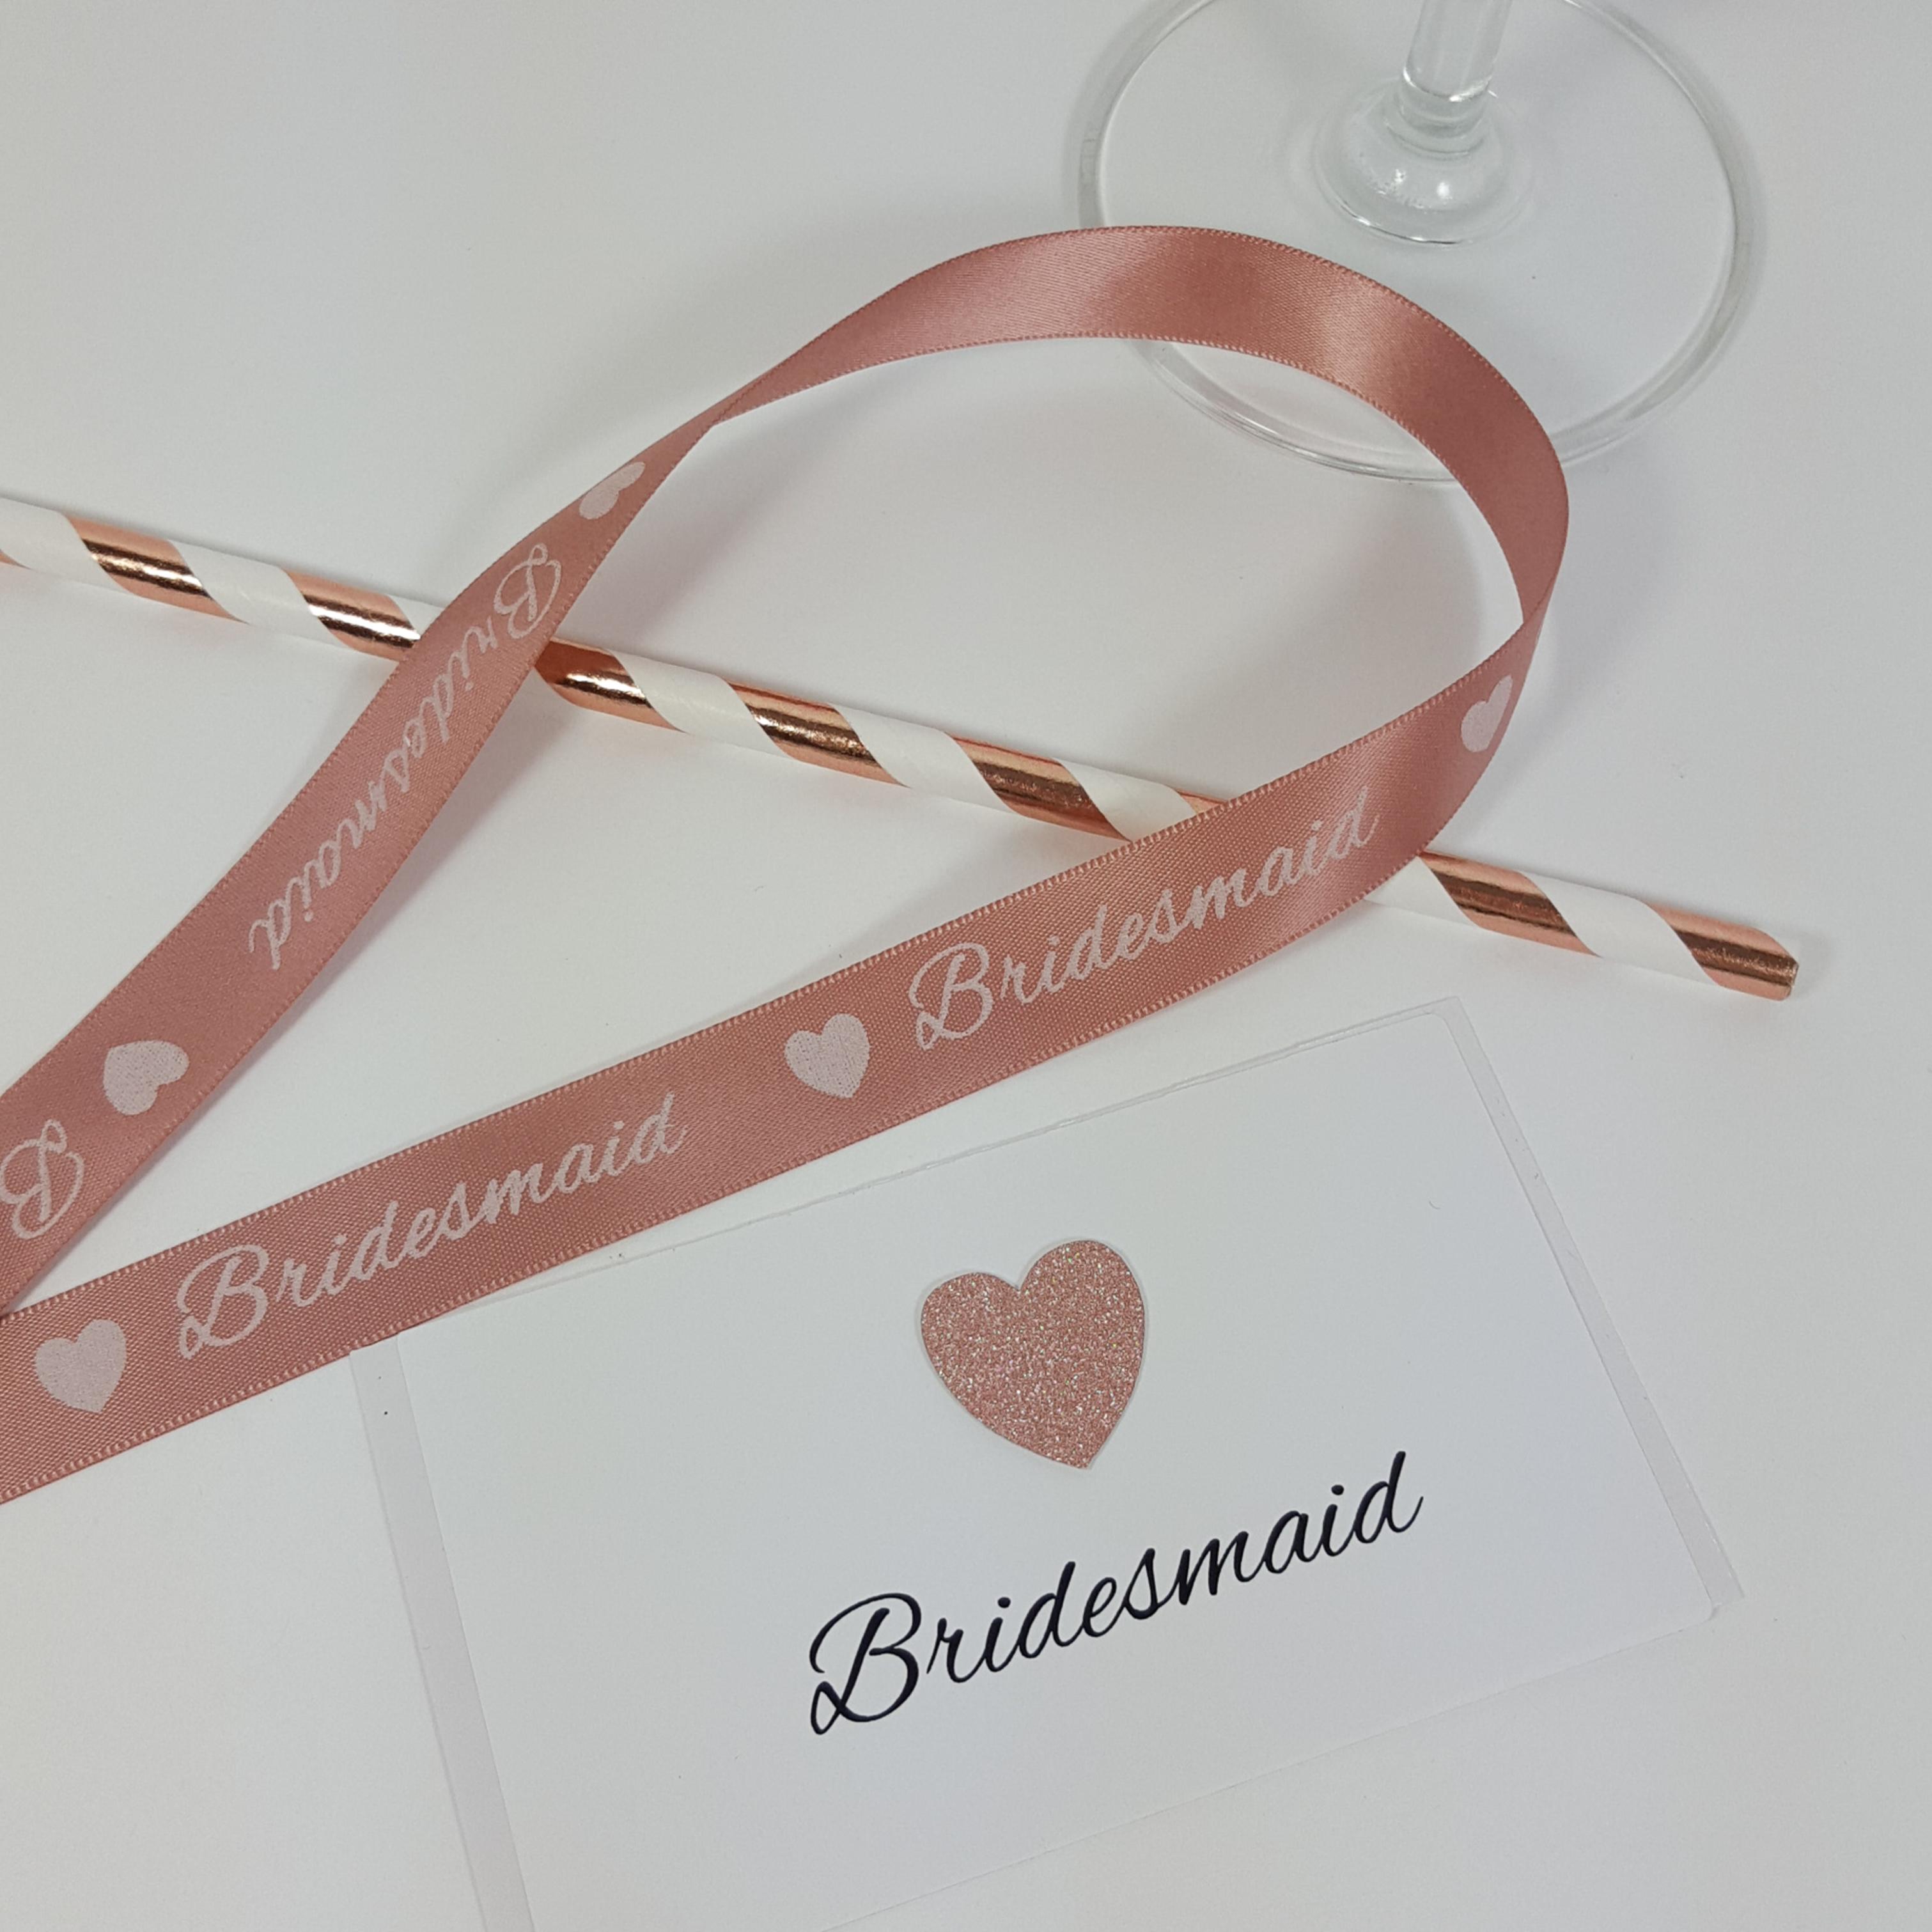 Bridesmaid Straws, labels and ribbons